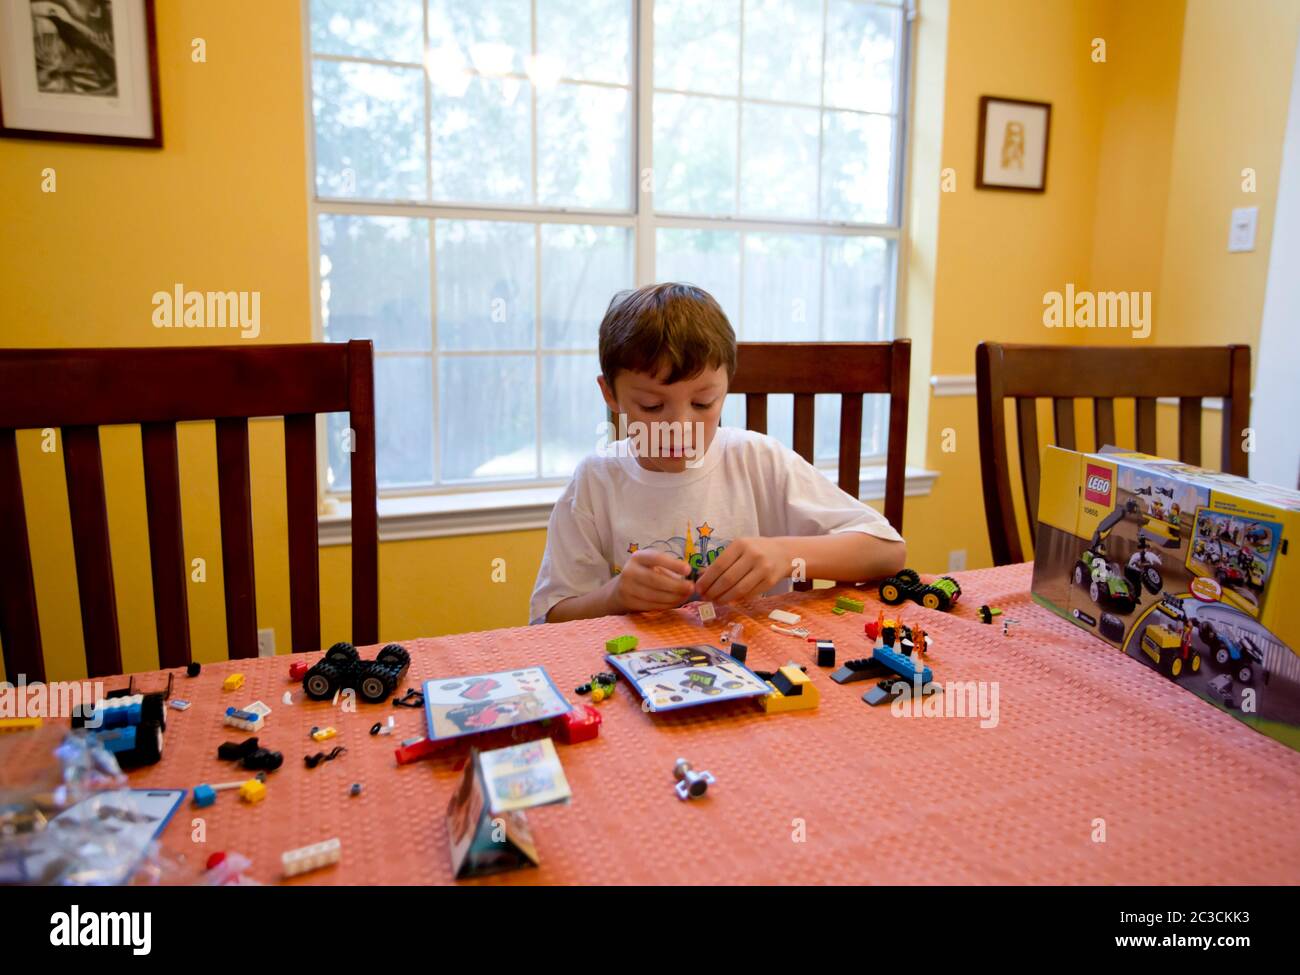 Der 7-jährige mexikanisch-amerikanische Junge spielt, baut und schaut sich Box an, um herauszufinden, wie man ein Lego-Set zu Hause zusammenstellt. Model veröffentlicht. mkc / Daemmrich Fotos Stockfoto